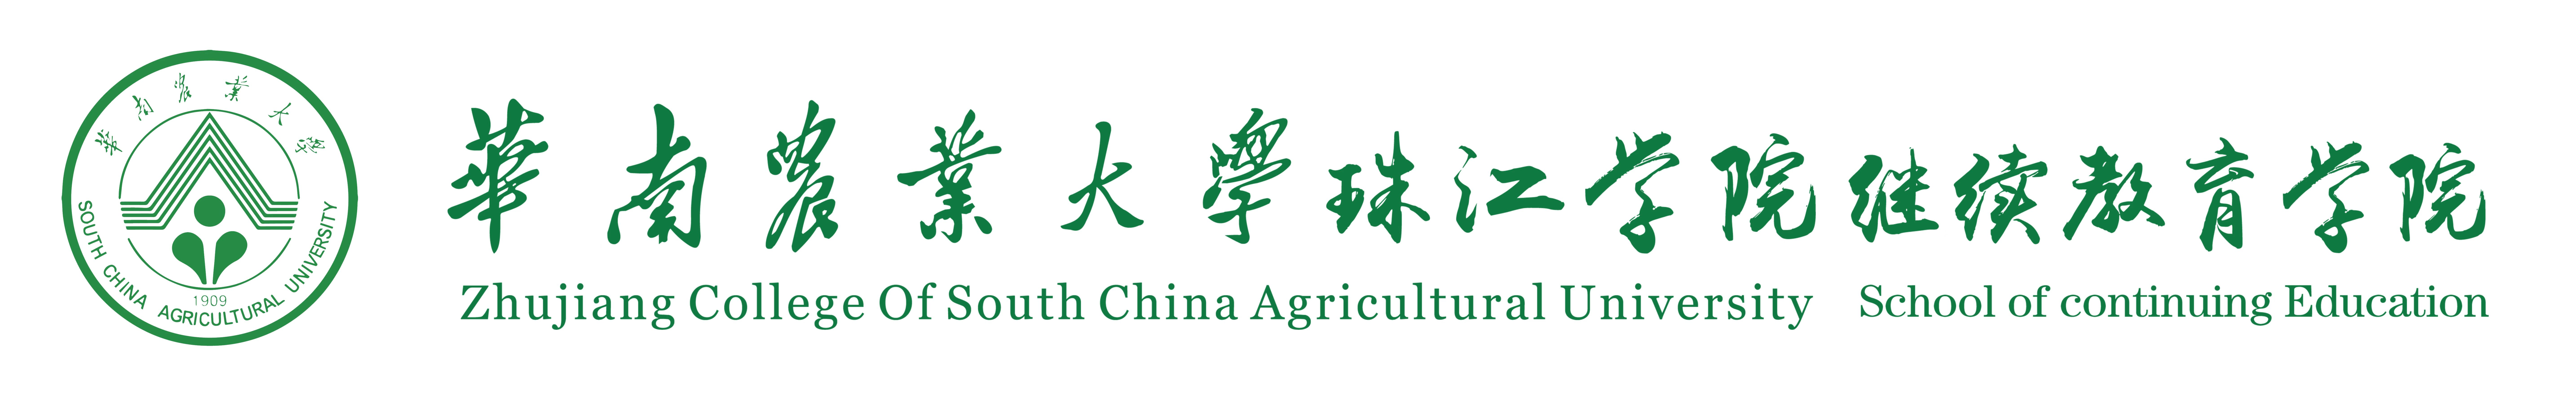 华南农业大学珠江学院继续教育学院